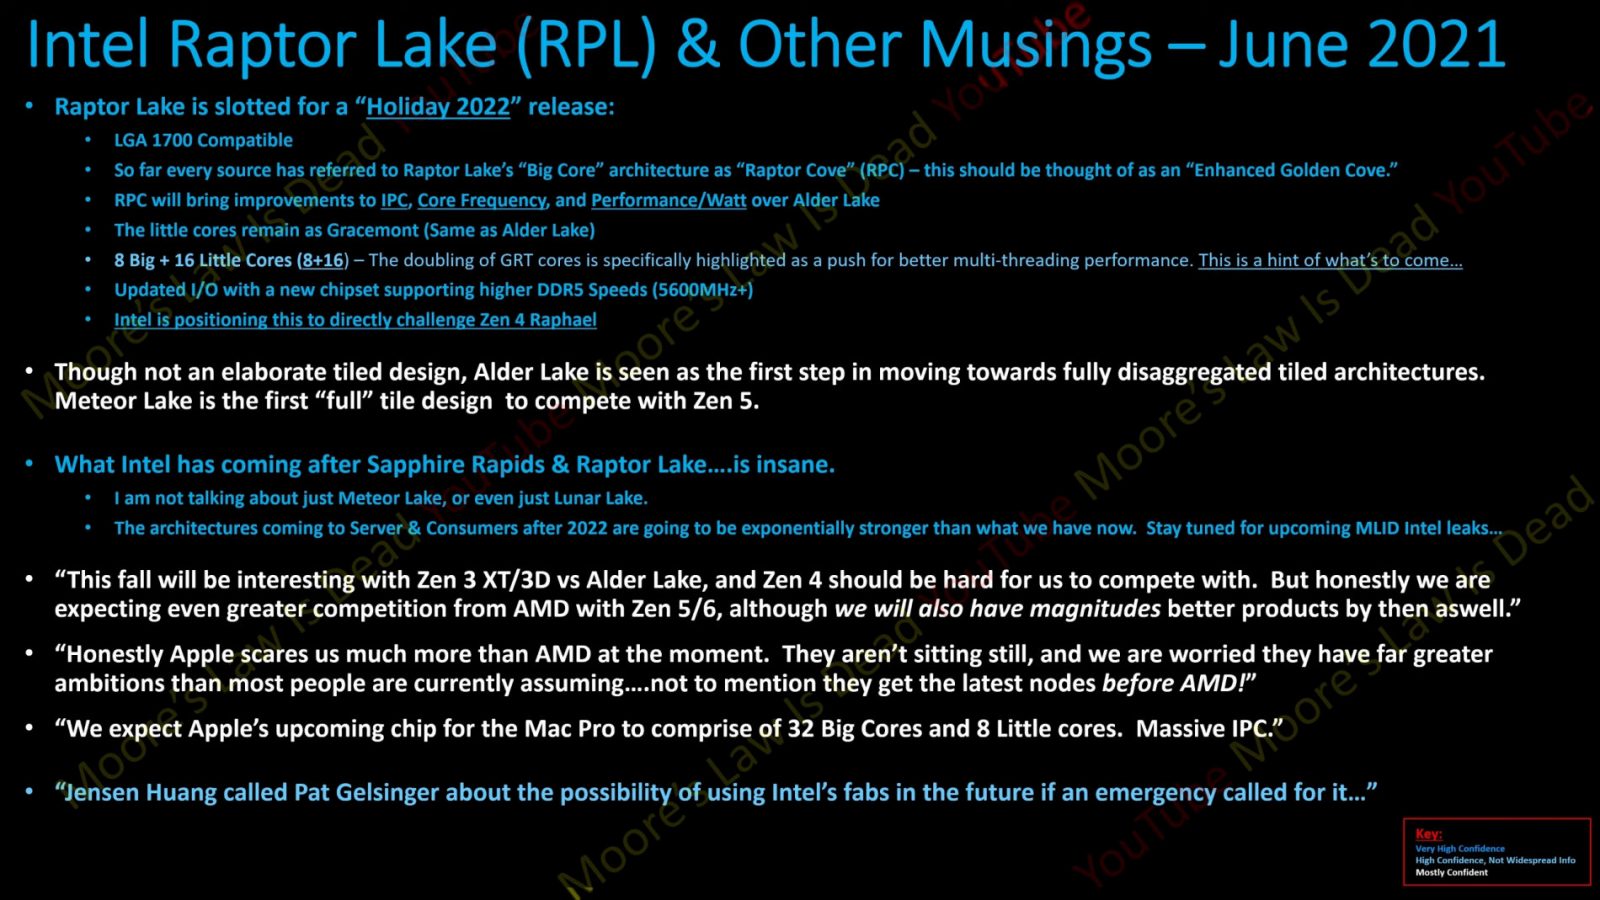 https://cdn.videocardz.com/1/2021/06/Intel-Raptor-Lake-MLID-1600x900.jpg